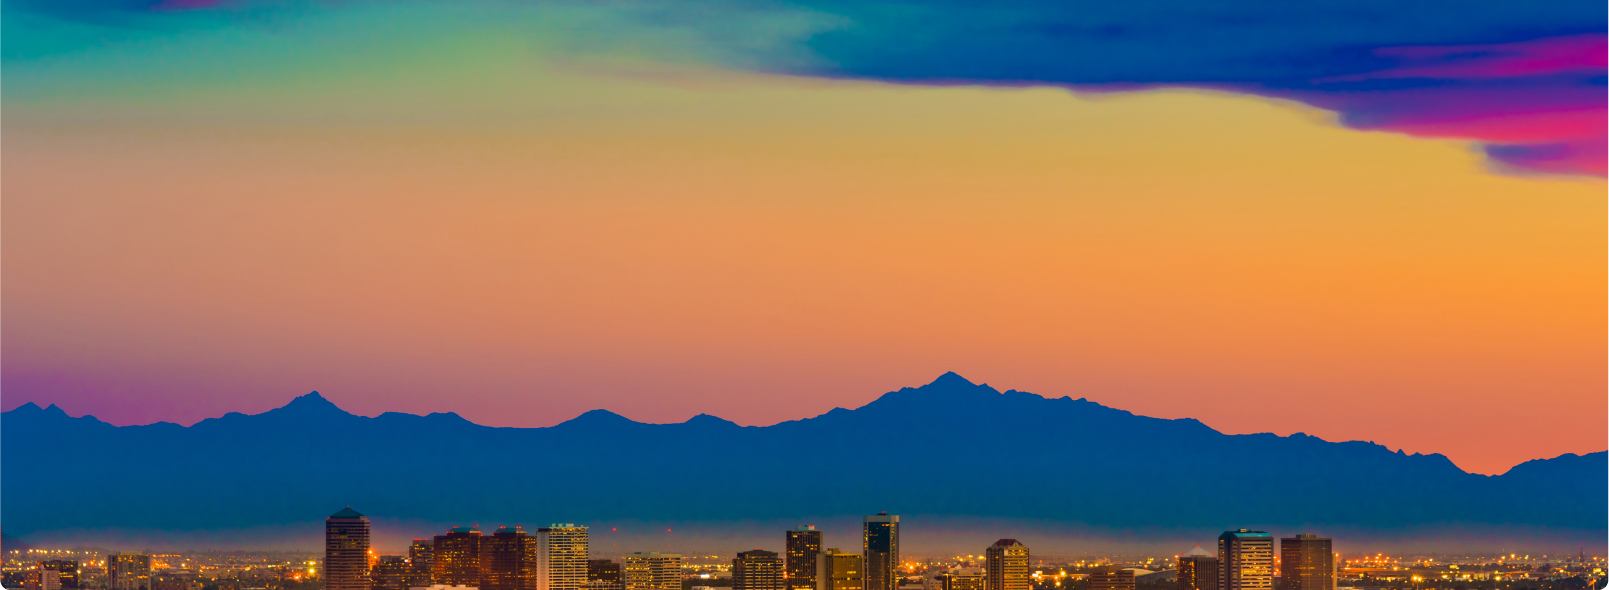 Skyline of Phoenix, AZ